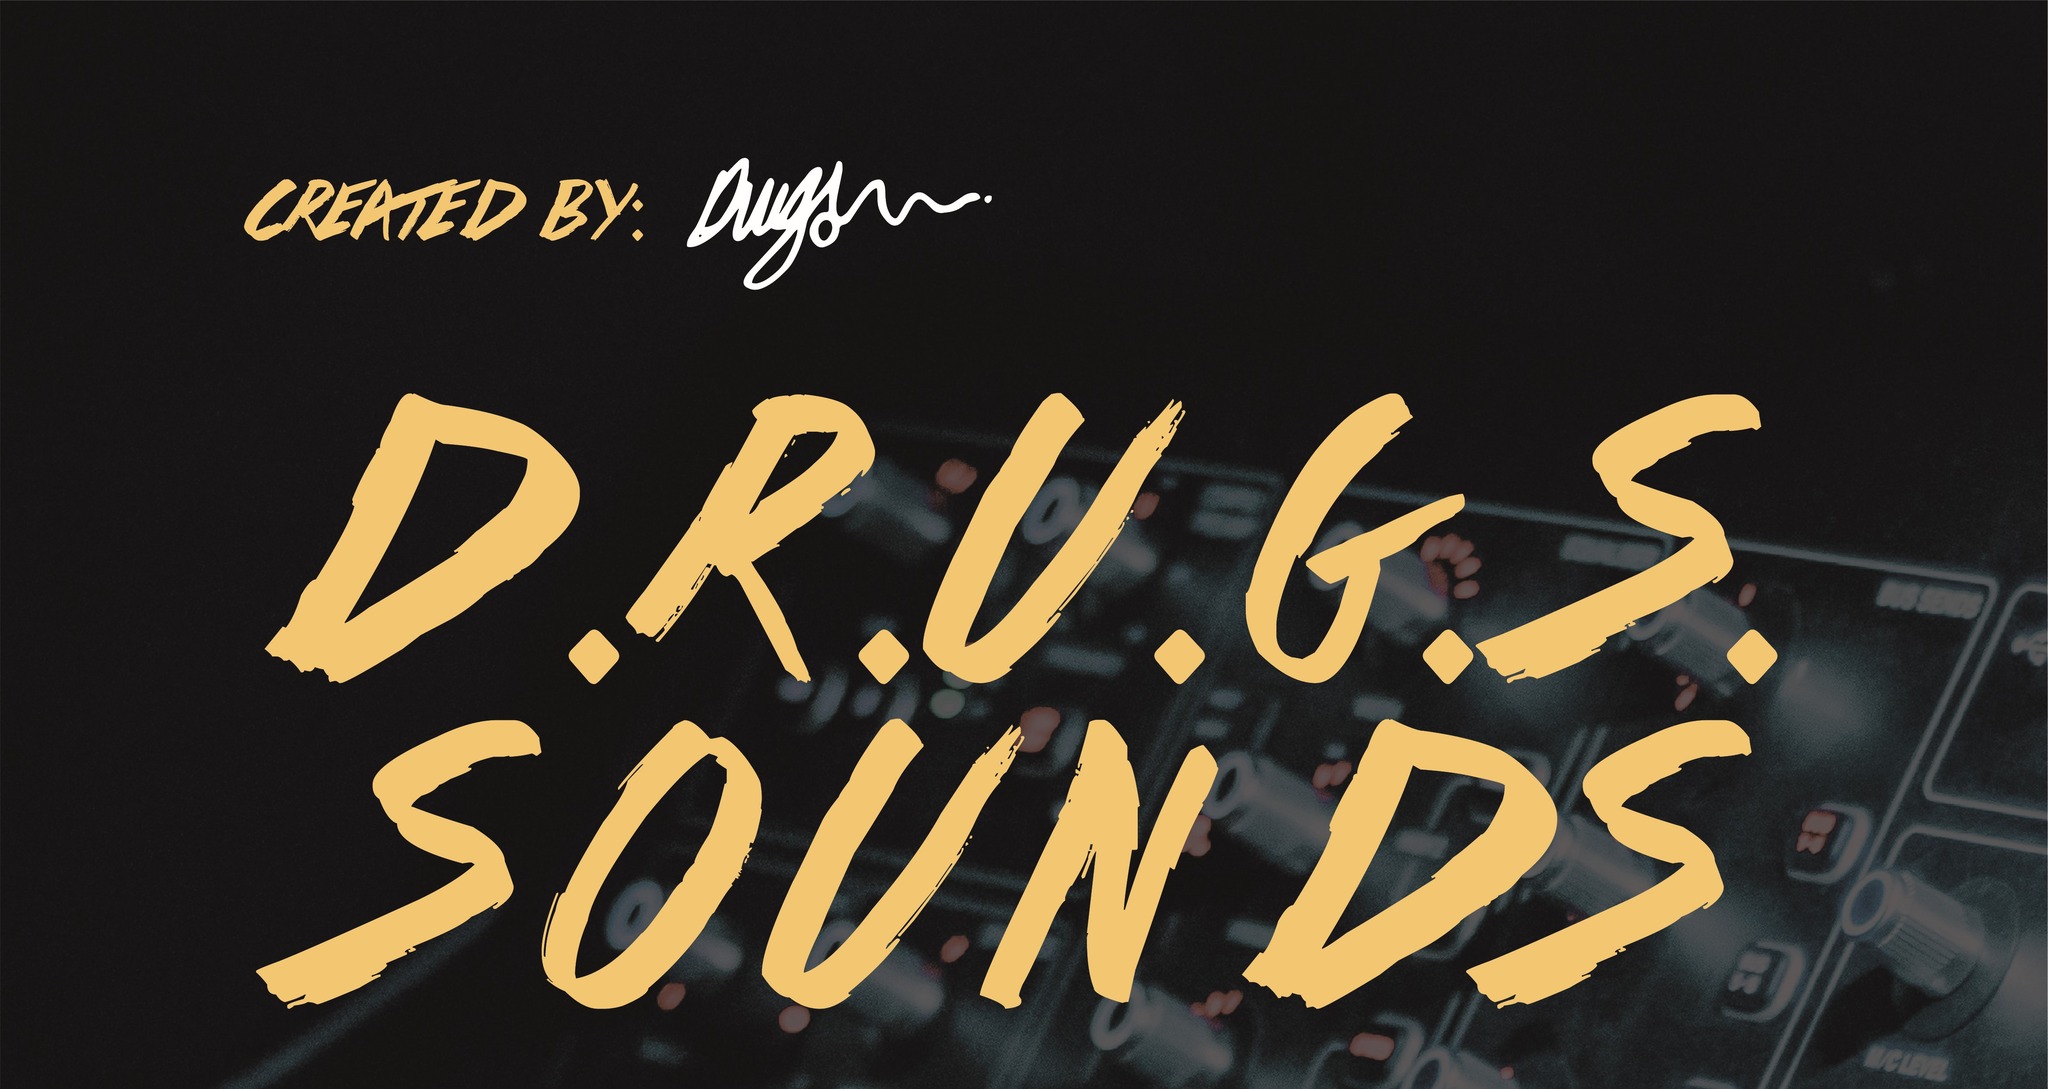 D.R.U.G.S. SOUNDS #3